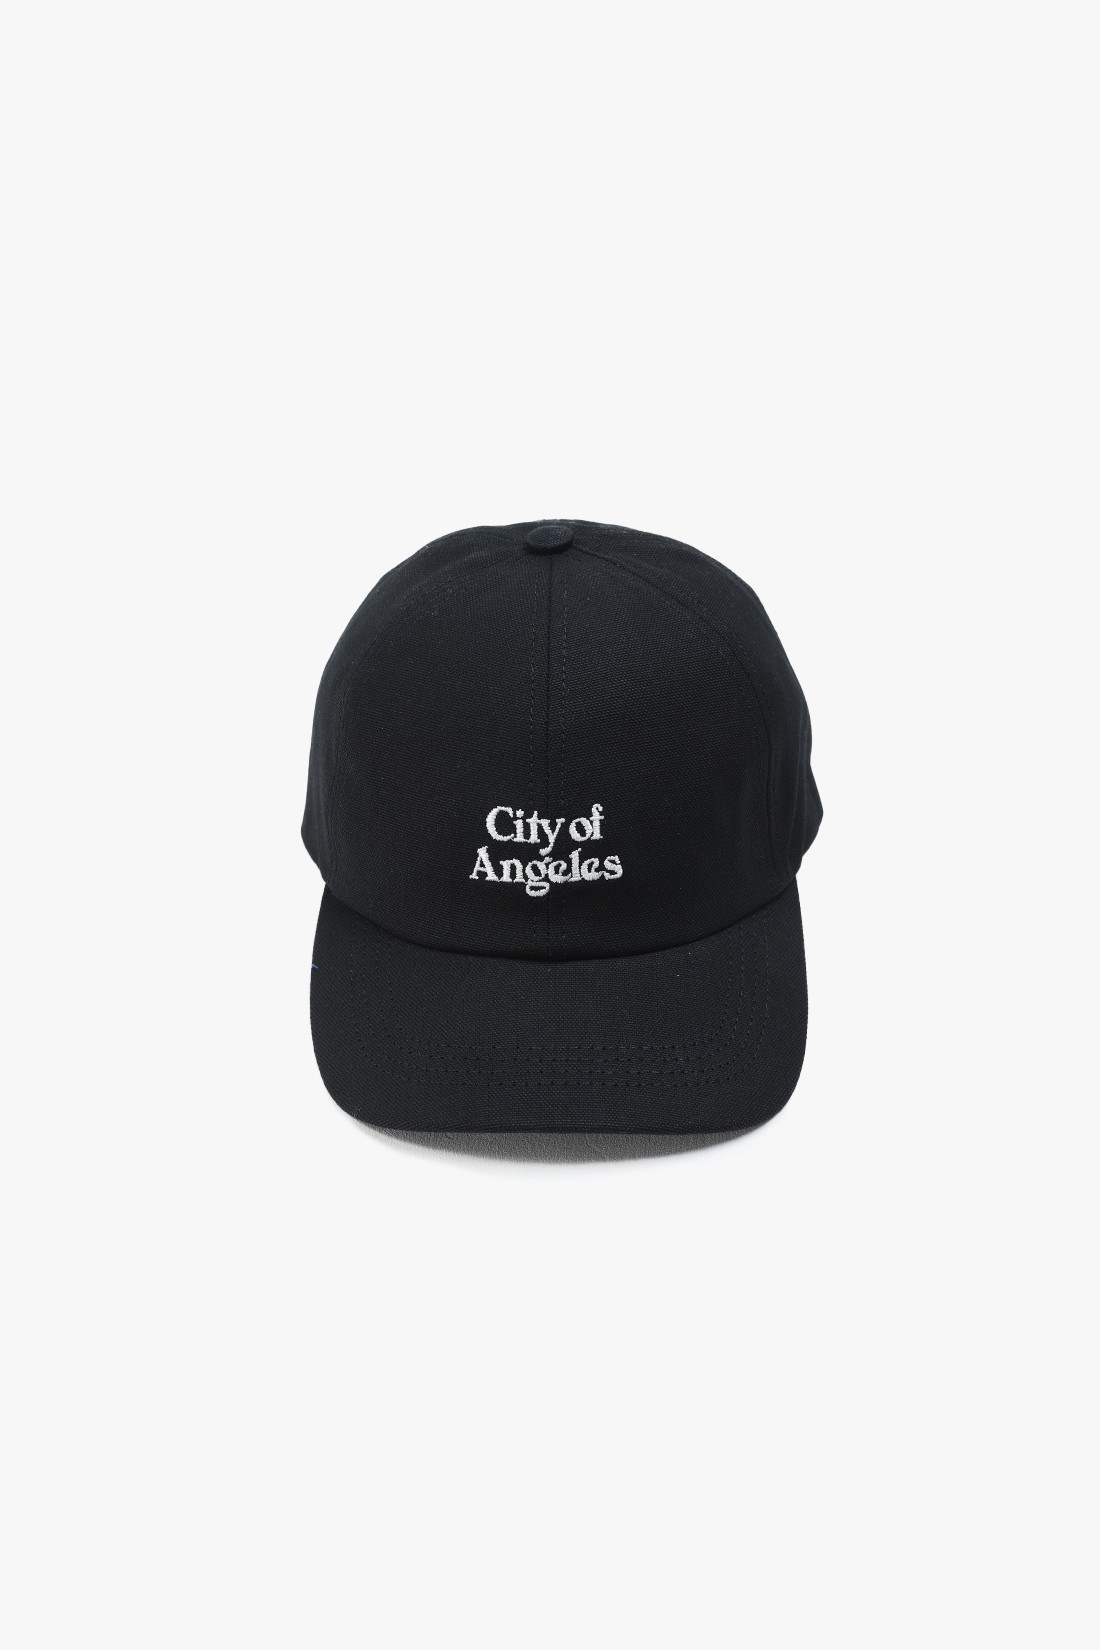 City of angeles cap Black